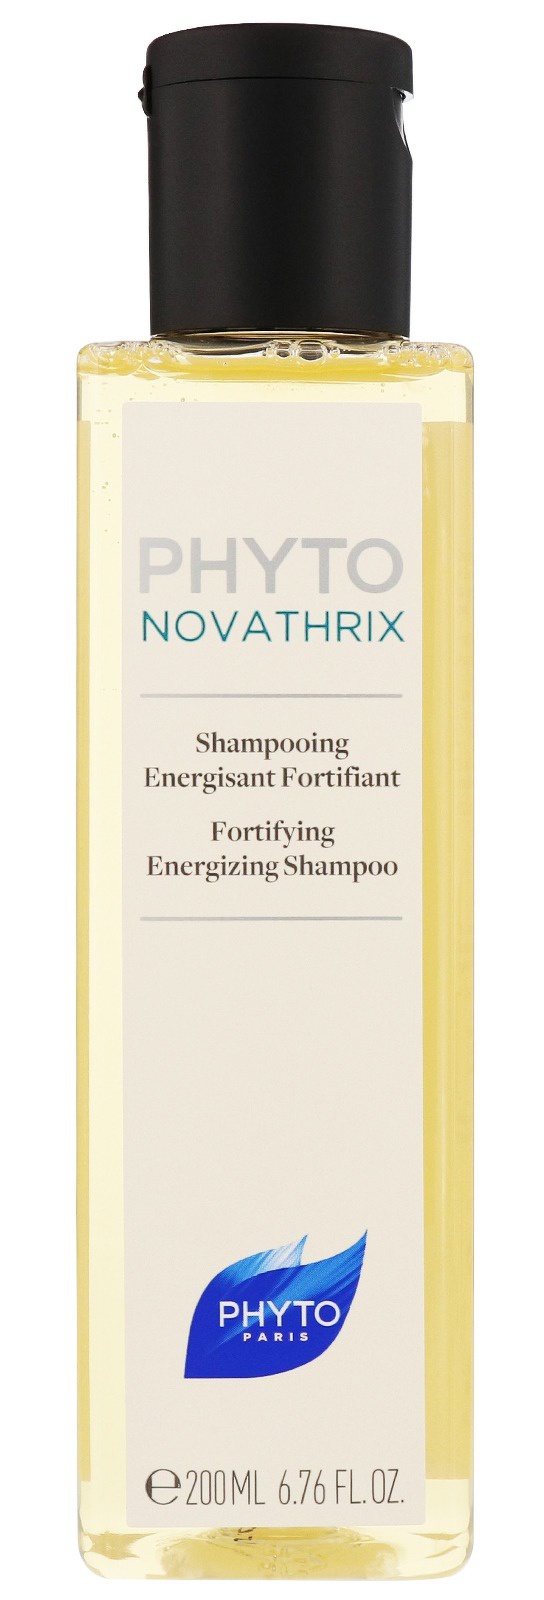 Phyto Novathrix Fortifying Energizing Shampoo